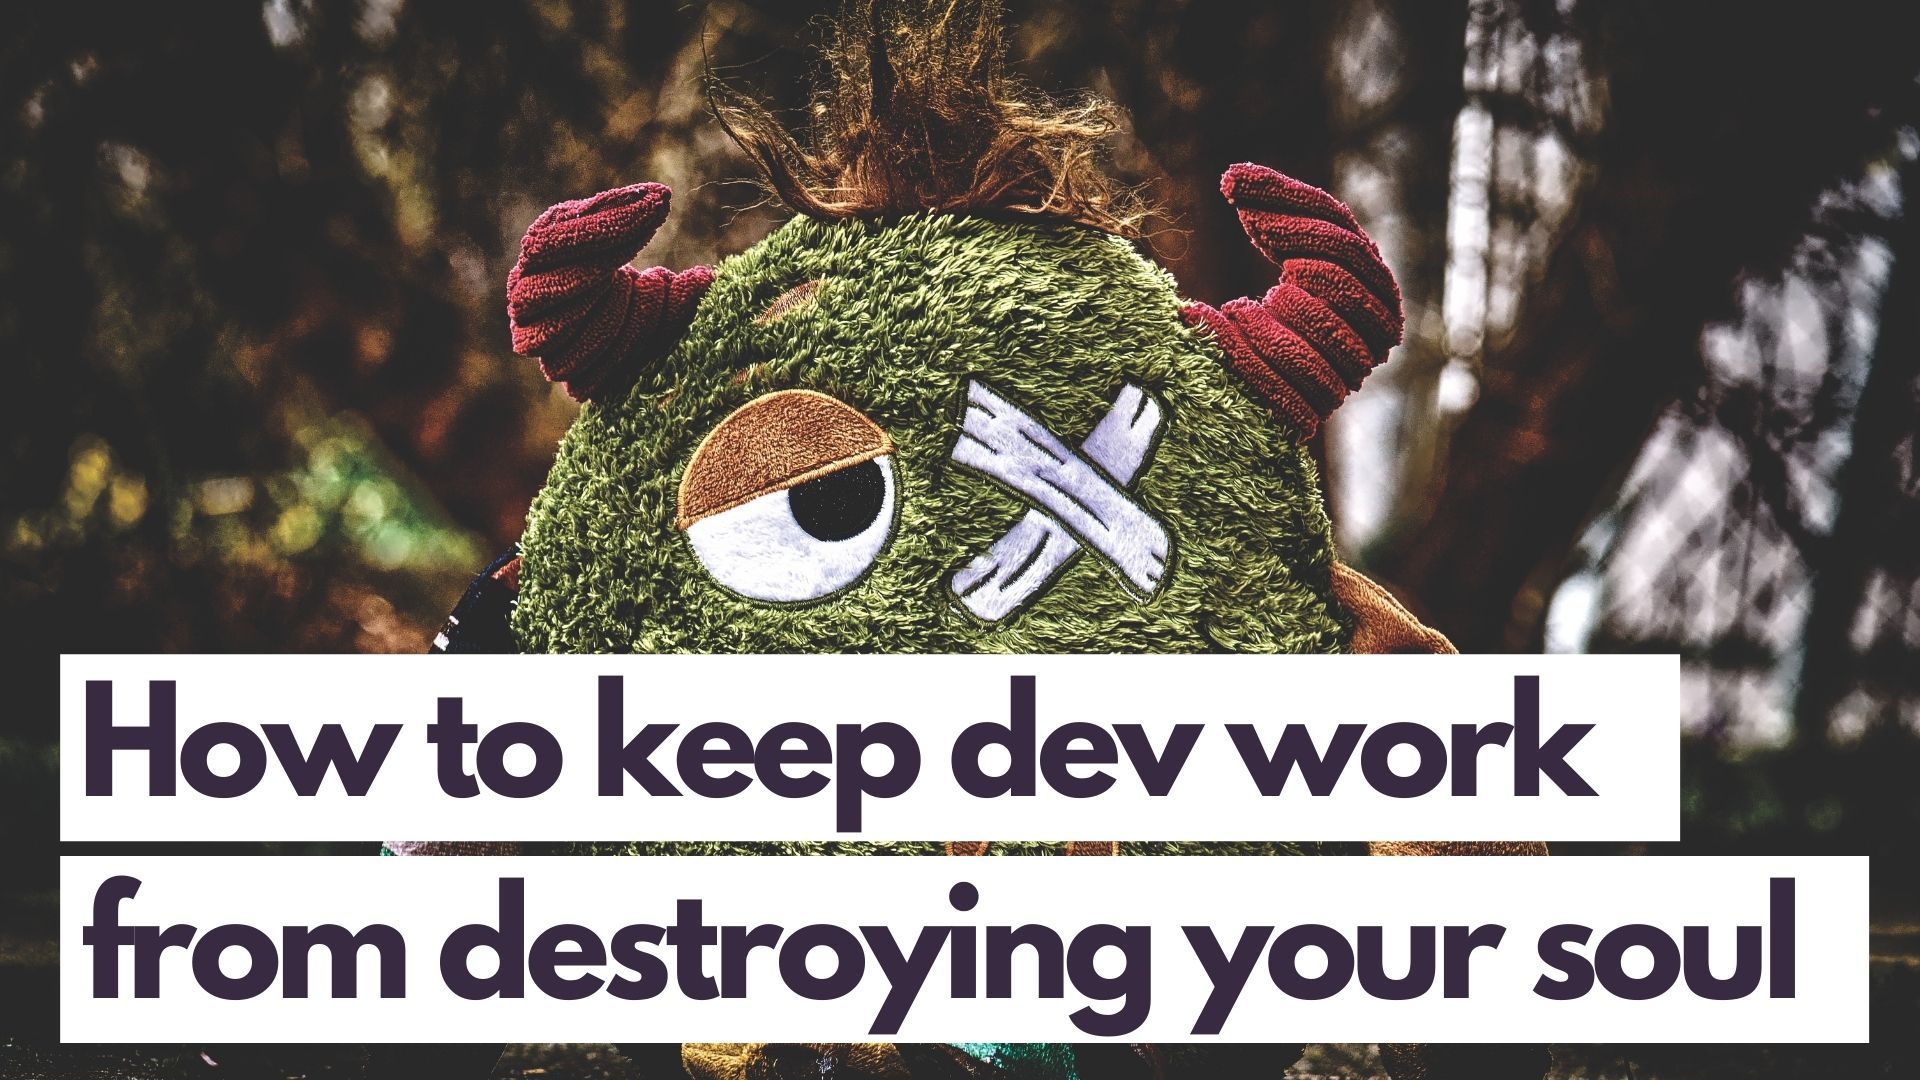 Don't Let Dev Work Destroy Your Soul